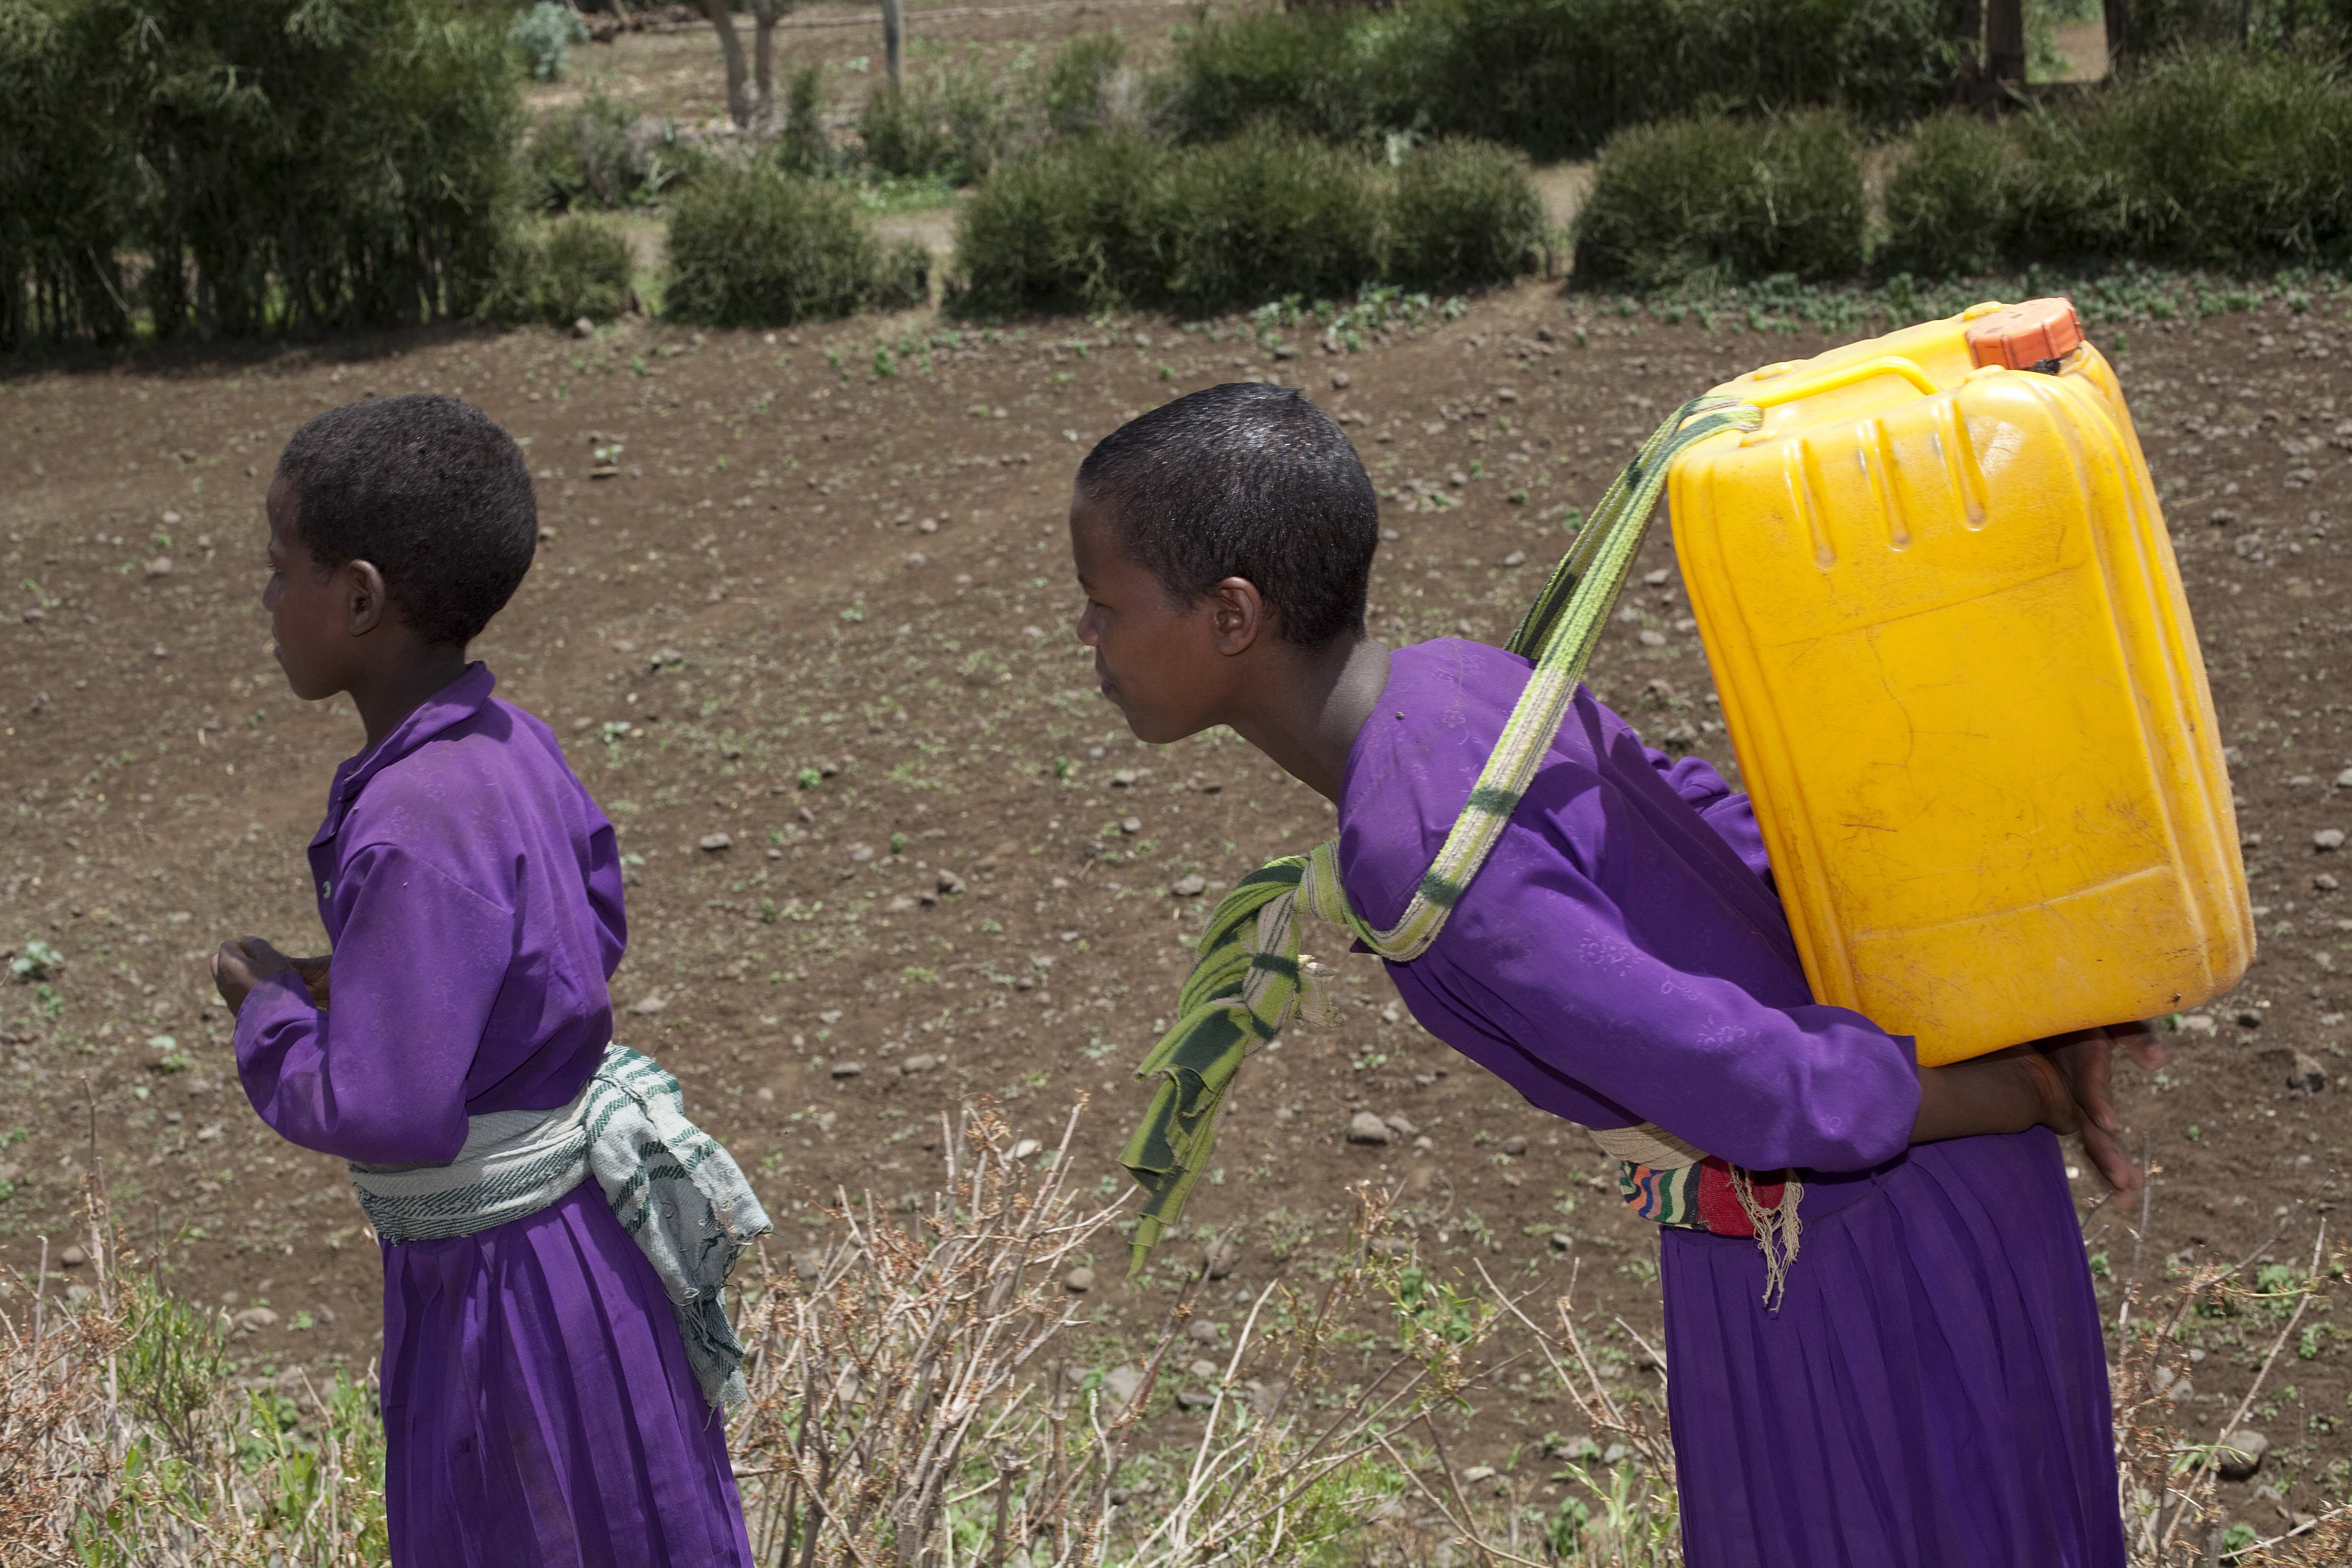 Mädchen trägt Wasserkanister - Humanitäre Hilfe für Dürreopfer in Äthiopien; Gelber Wasserkanister, Mädchen in violetter Kleidung, Feld, Dürre, Trockenheit